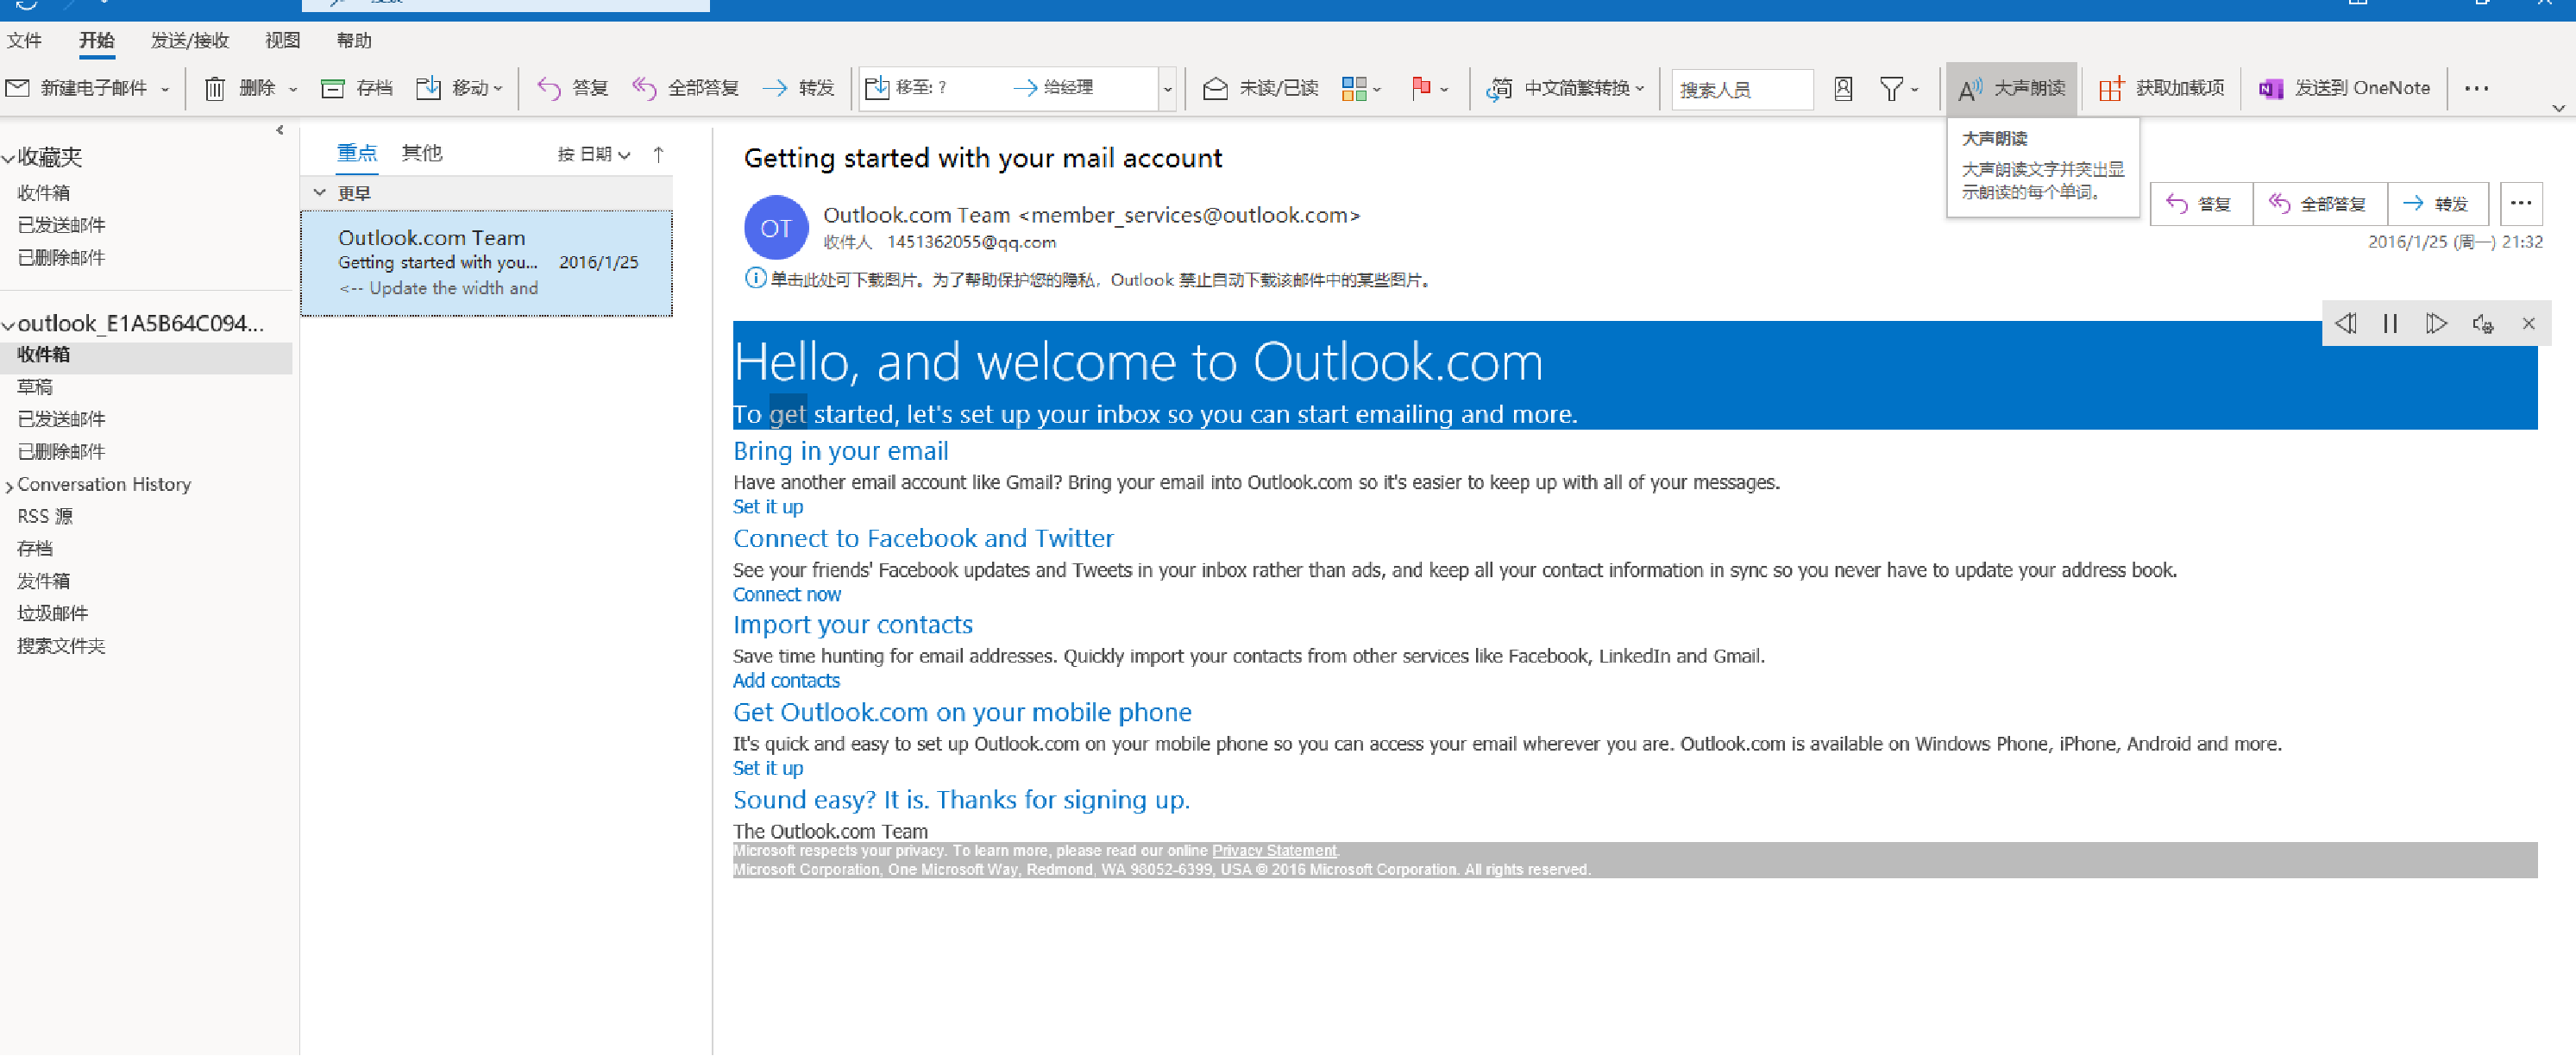 让 Word 和 Outlook 进行朗读- Word 使用技巧 - Windows10 进阶版操作手册